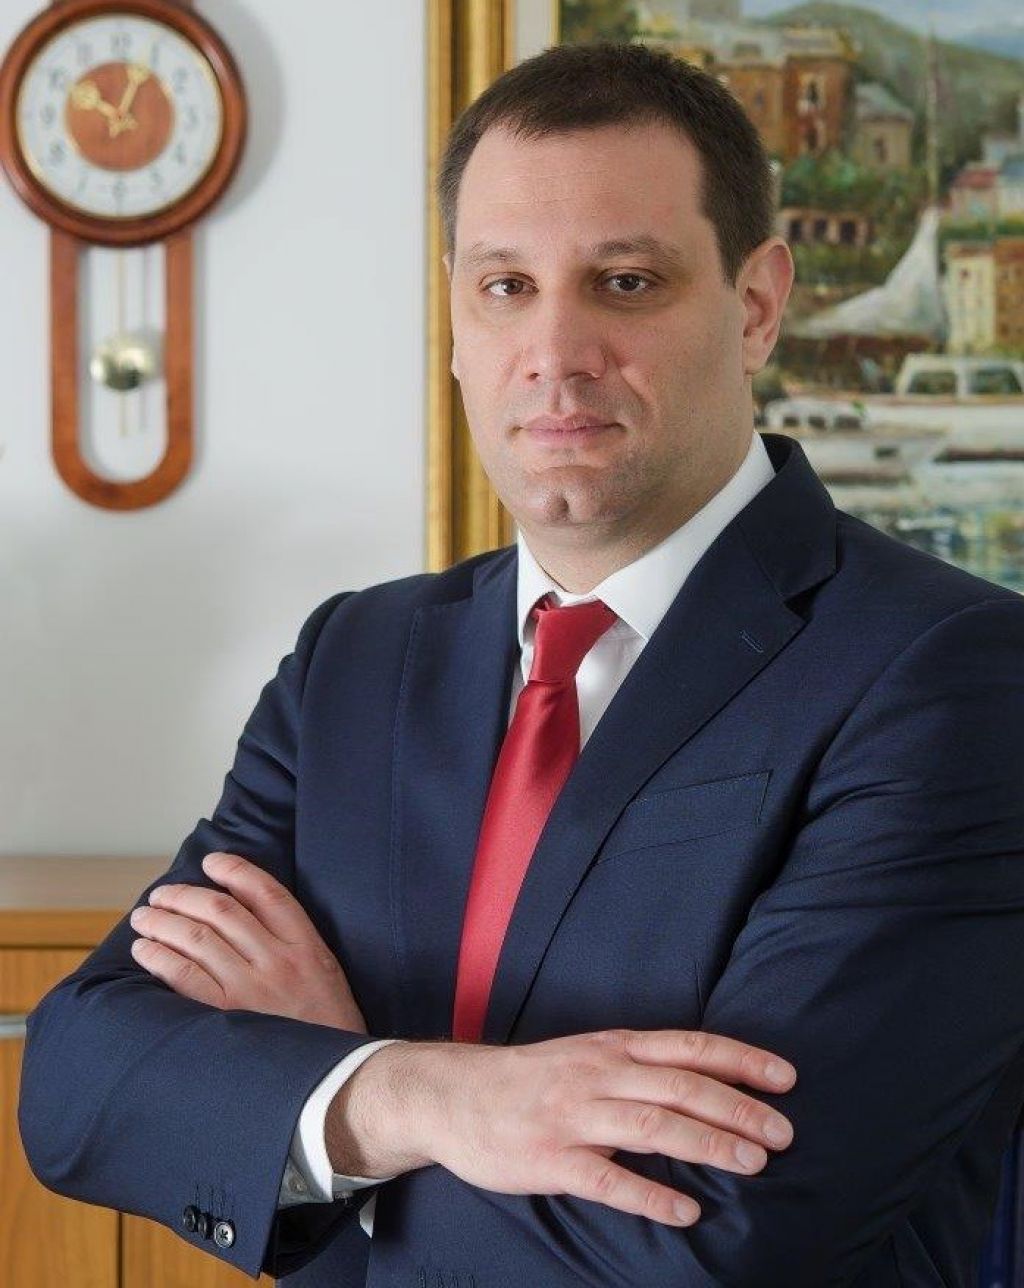 Predsednik IO Milenijum osiguranja Ljubiša Veljković izabran za člana Nadzornog odbora Udruženja osiguravača Srbije